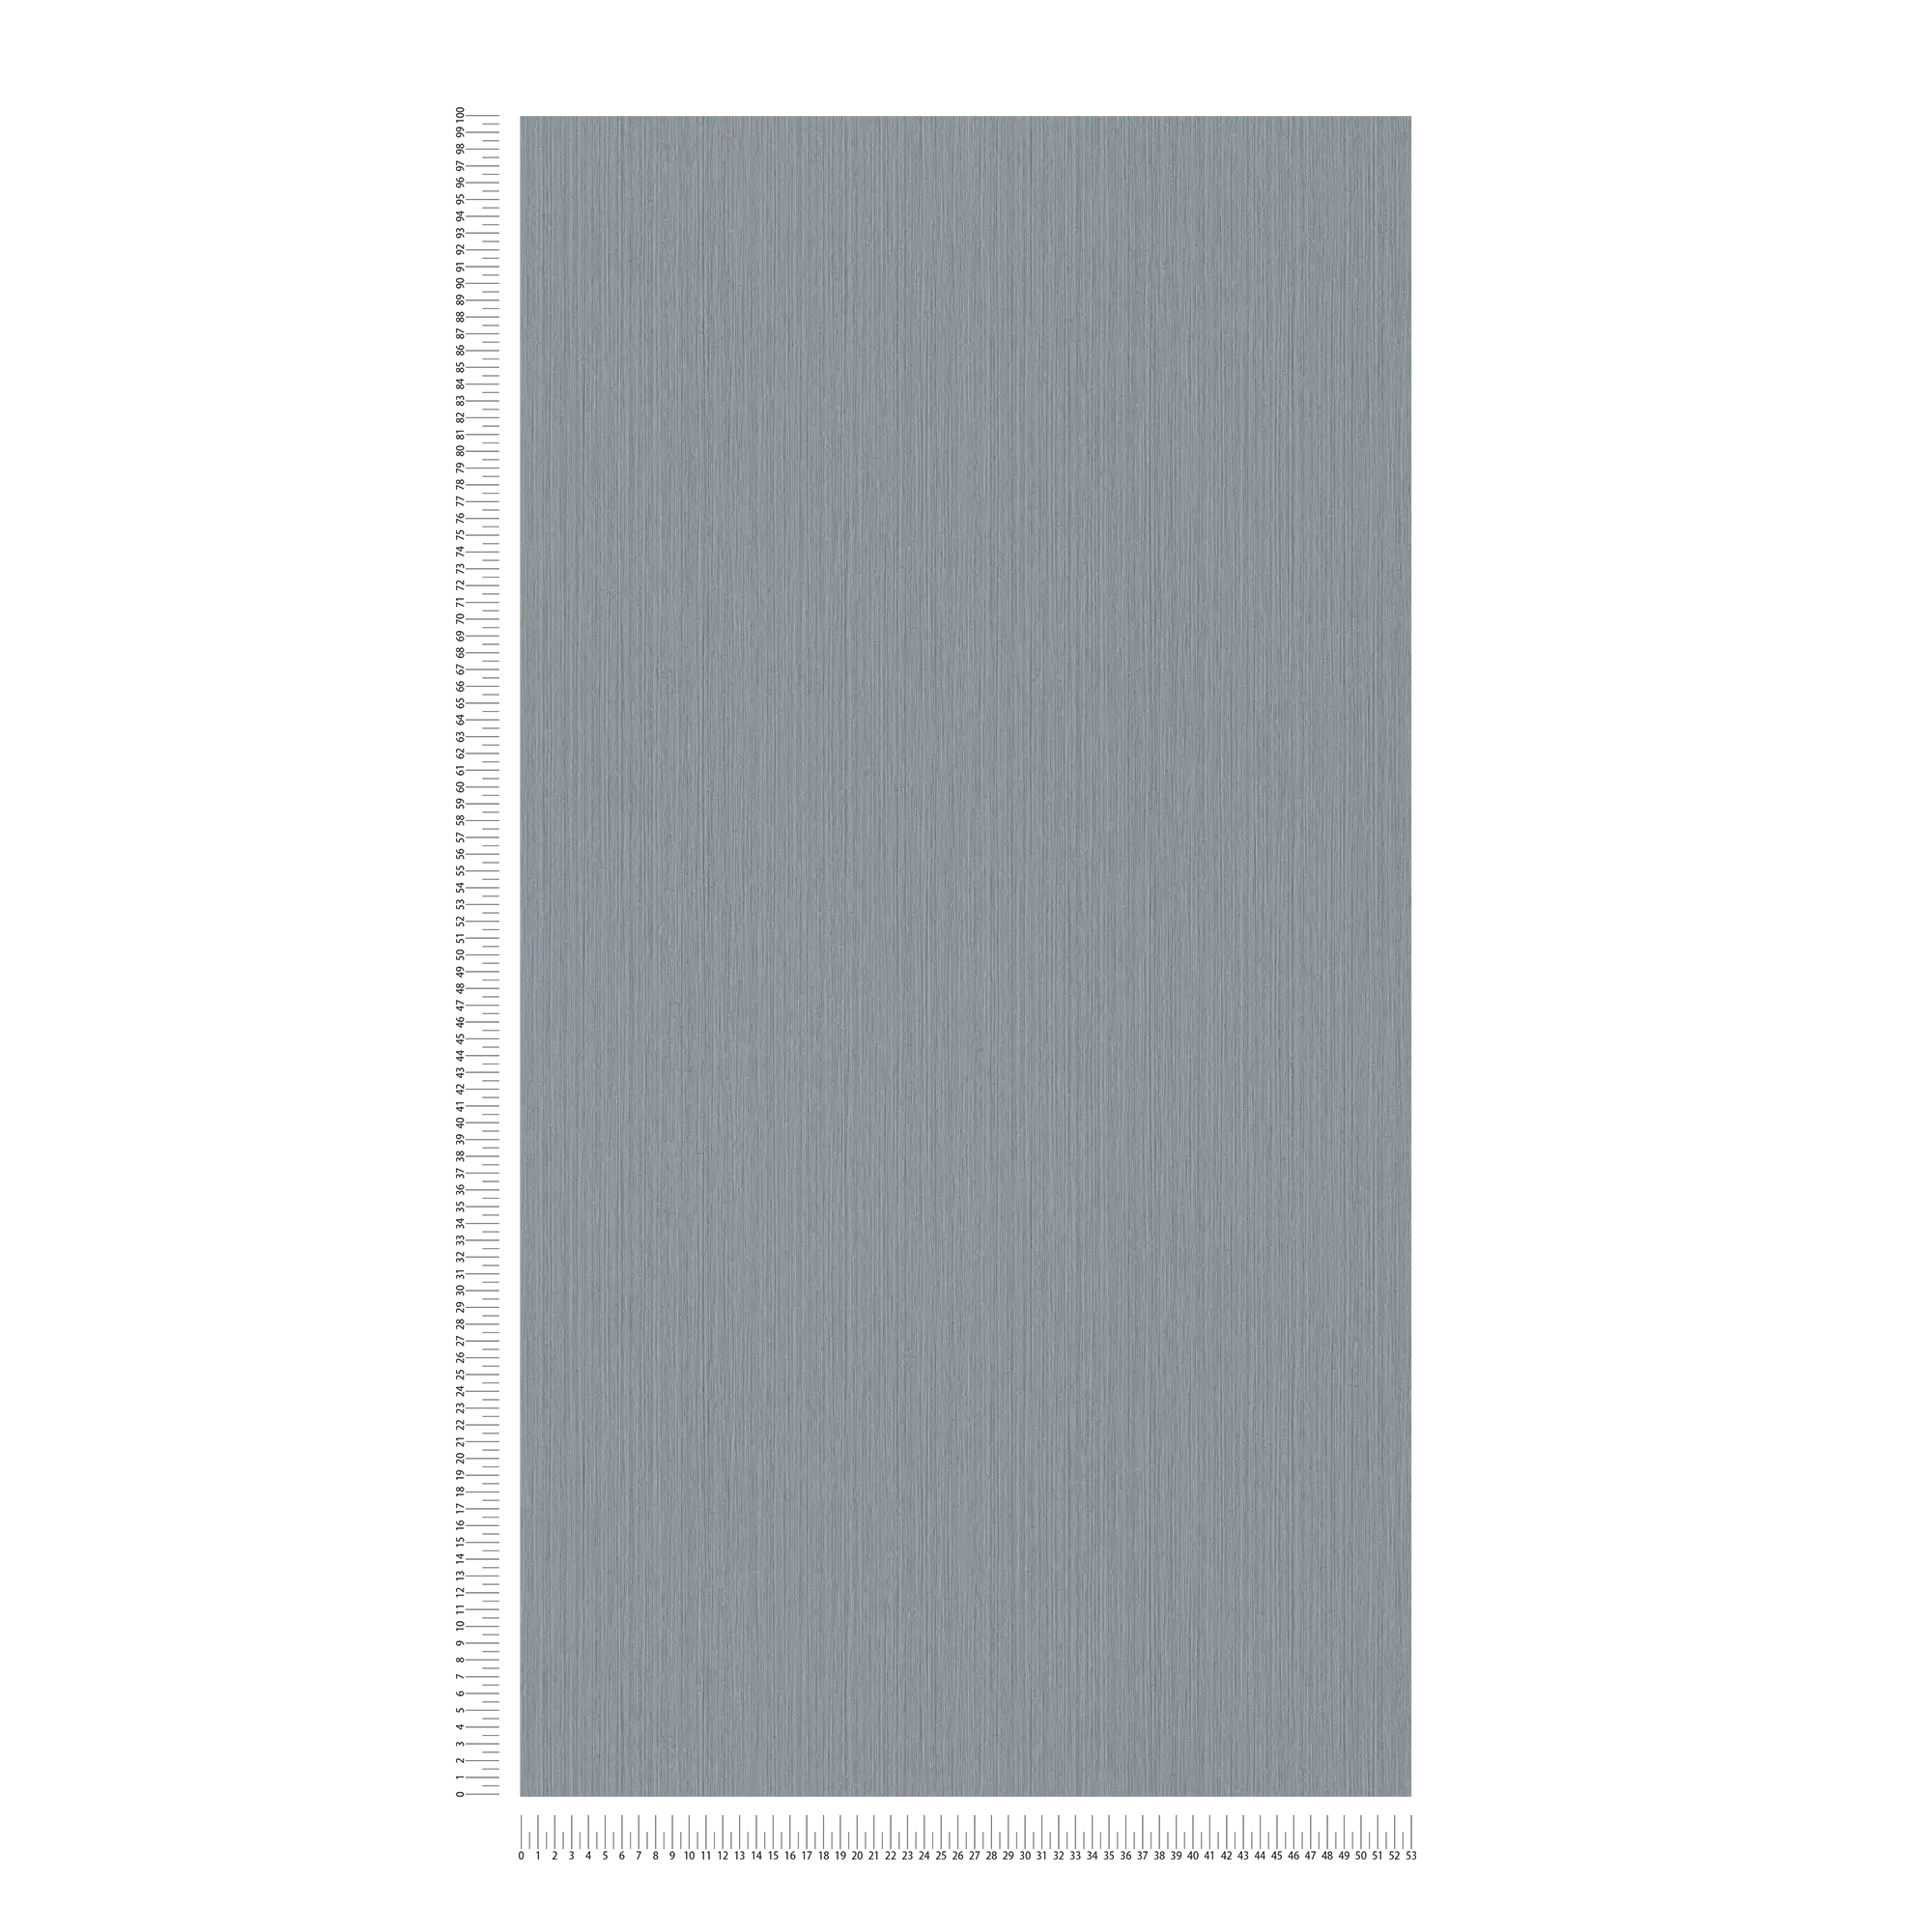             Papier peint uni gris avec effet textile chiné de MICHALSKY
        